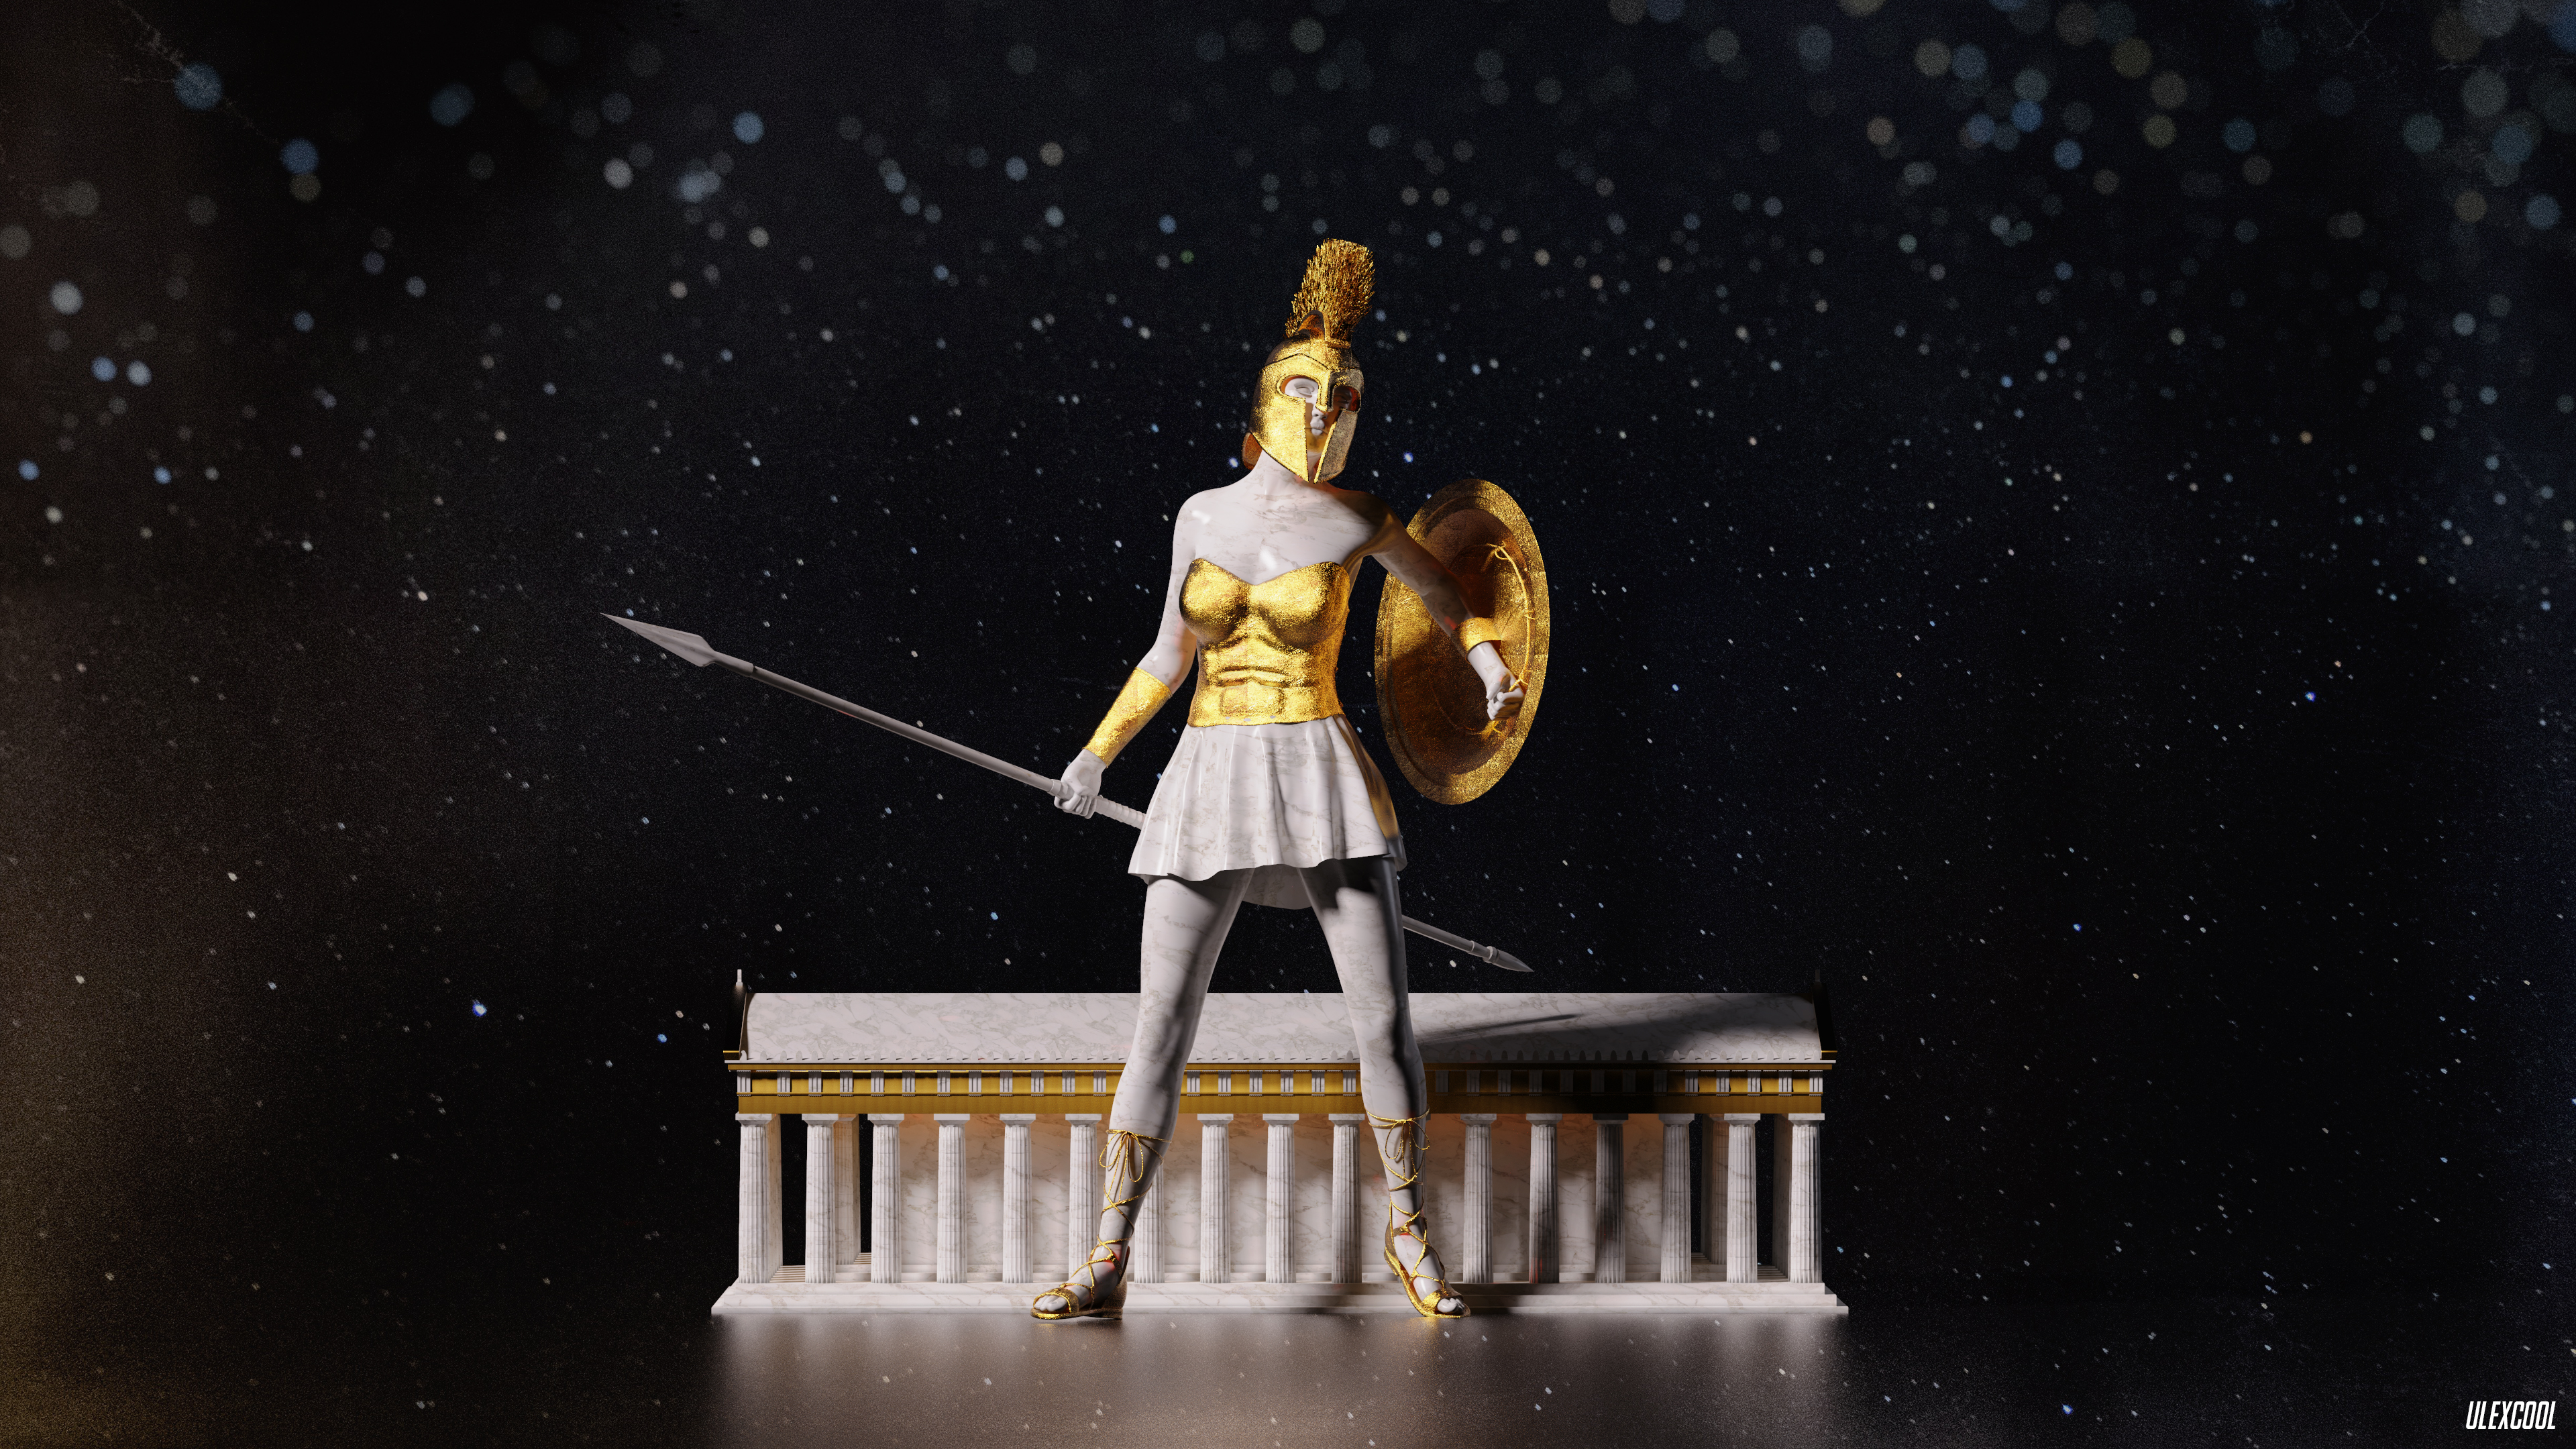 Greek Mythology Greek Mythology Ancient Greek Sculpture Sculpture Marble Gold Stars CGi Digital Art  3840x2160